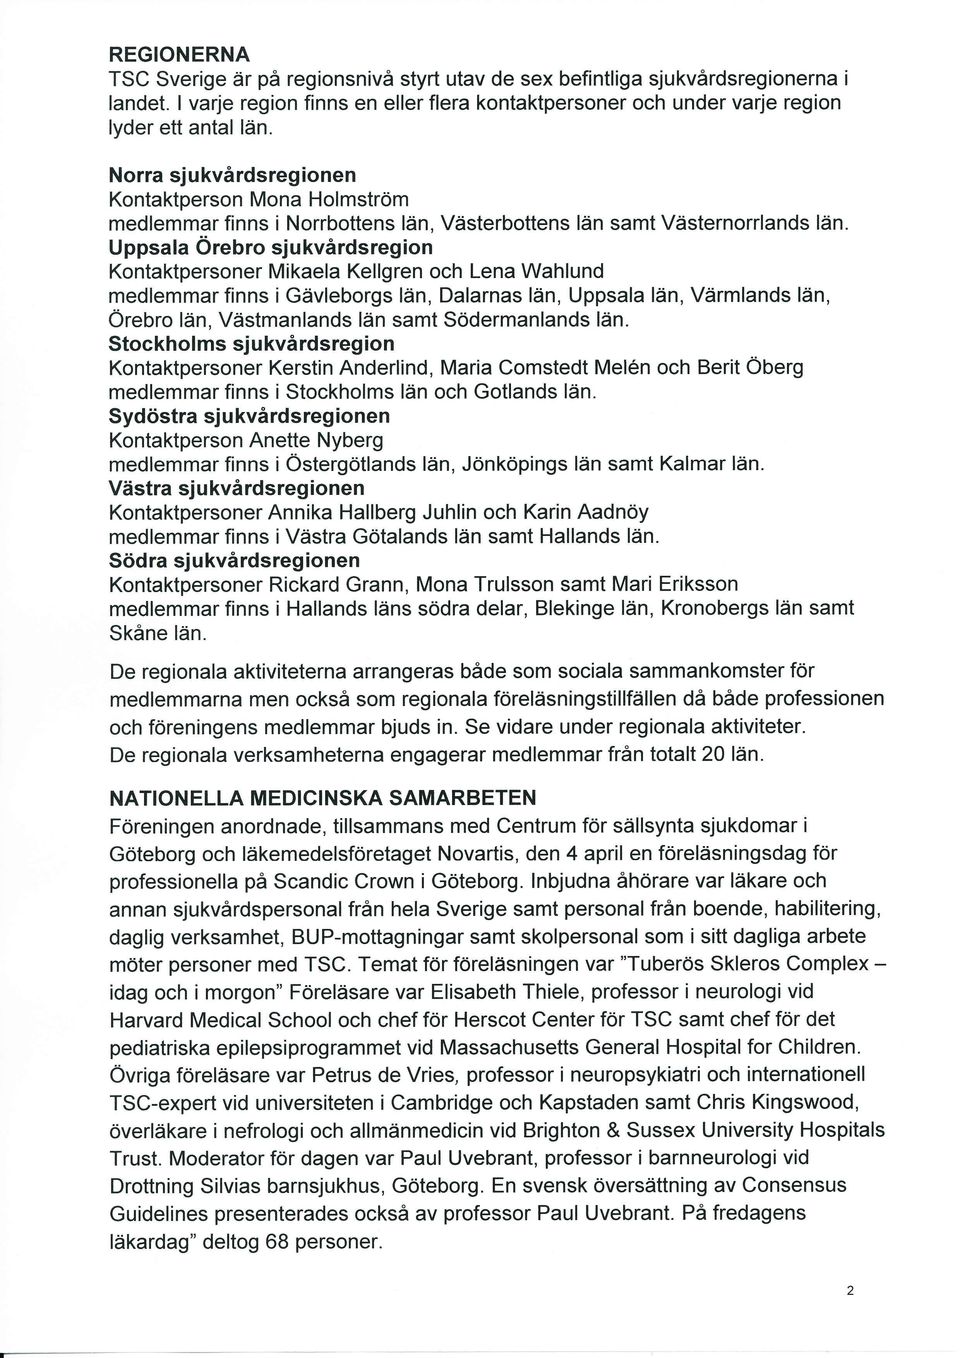 Uppsala Örebro sjukvårdsregion Kontaktpersoner Mikaela Kellgren och Lena Wahlund medlemmar finns i Gävleborgs län, Dalarnas län, Uppsala Iän, Värmlands län, Örebro län, Västmanlands län samt